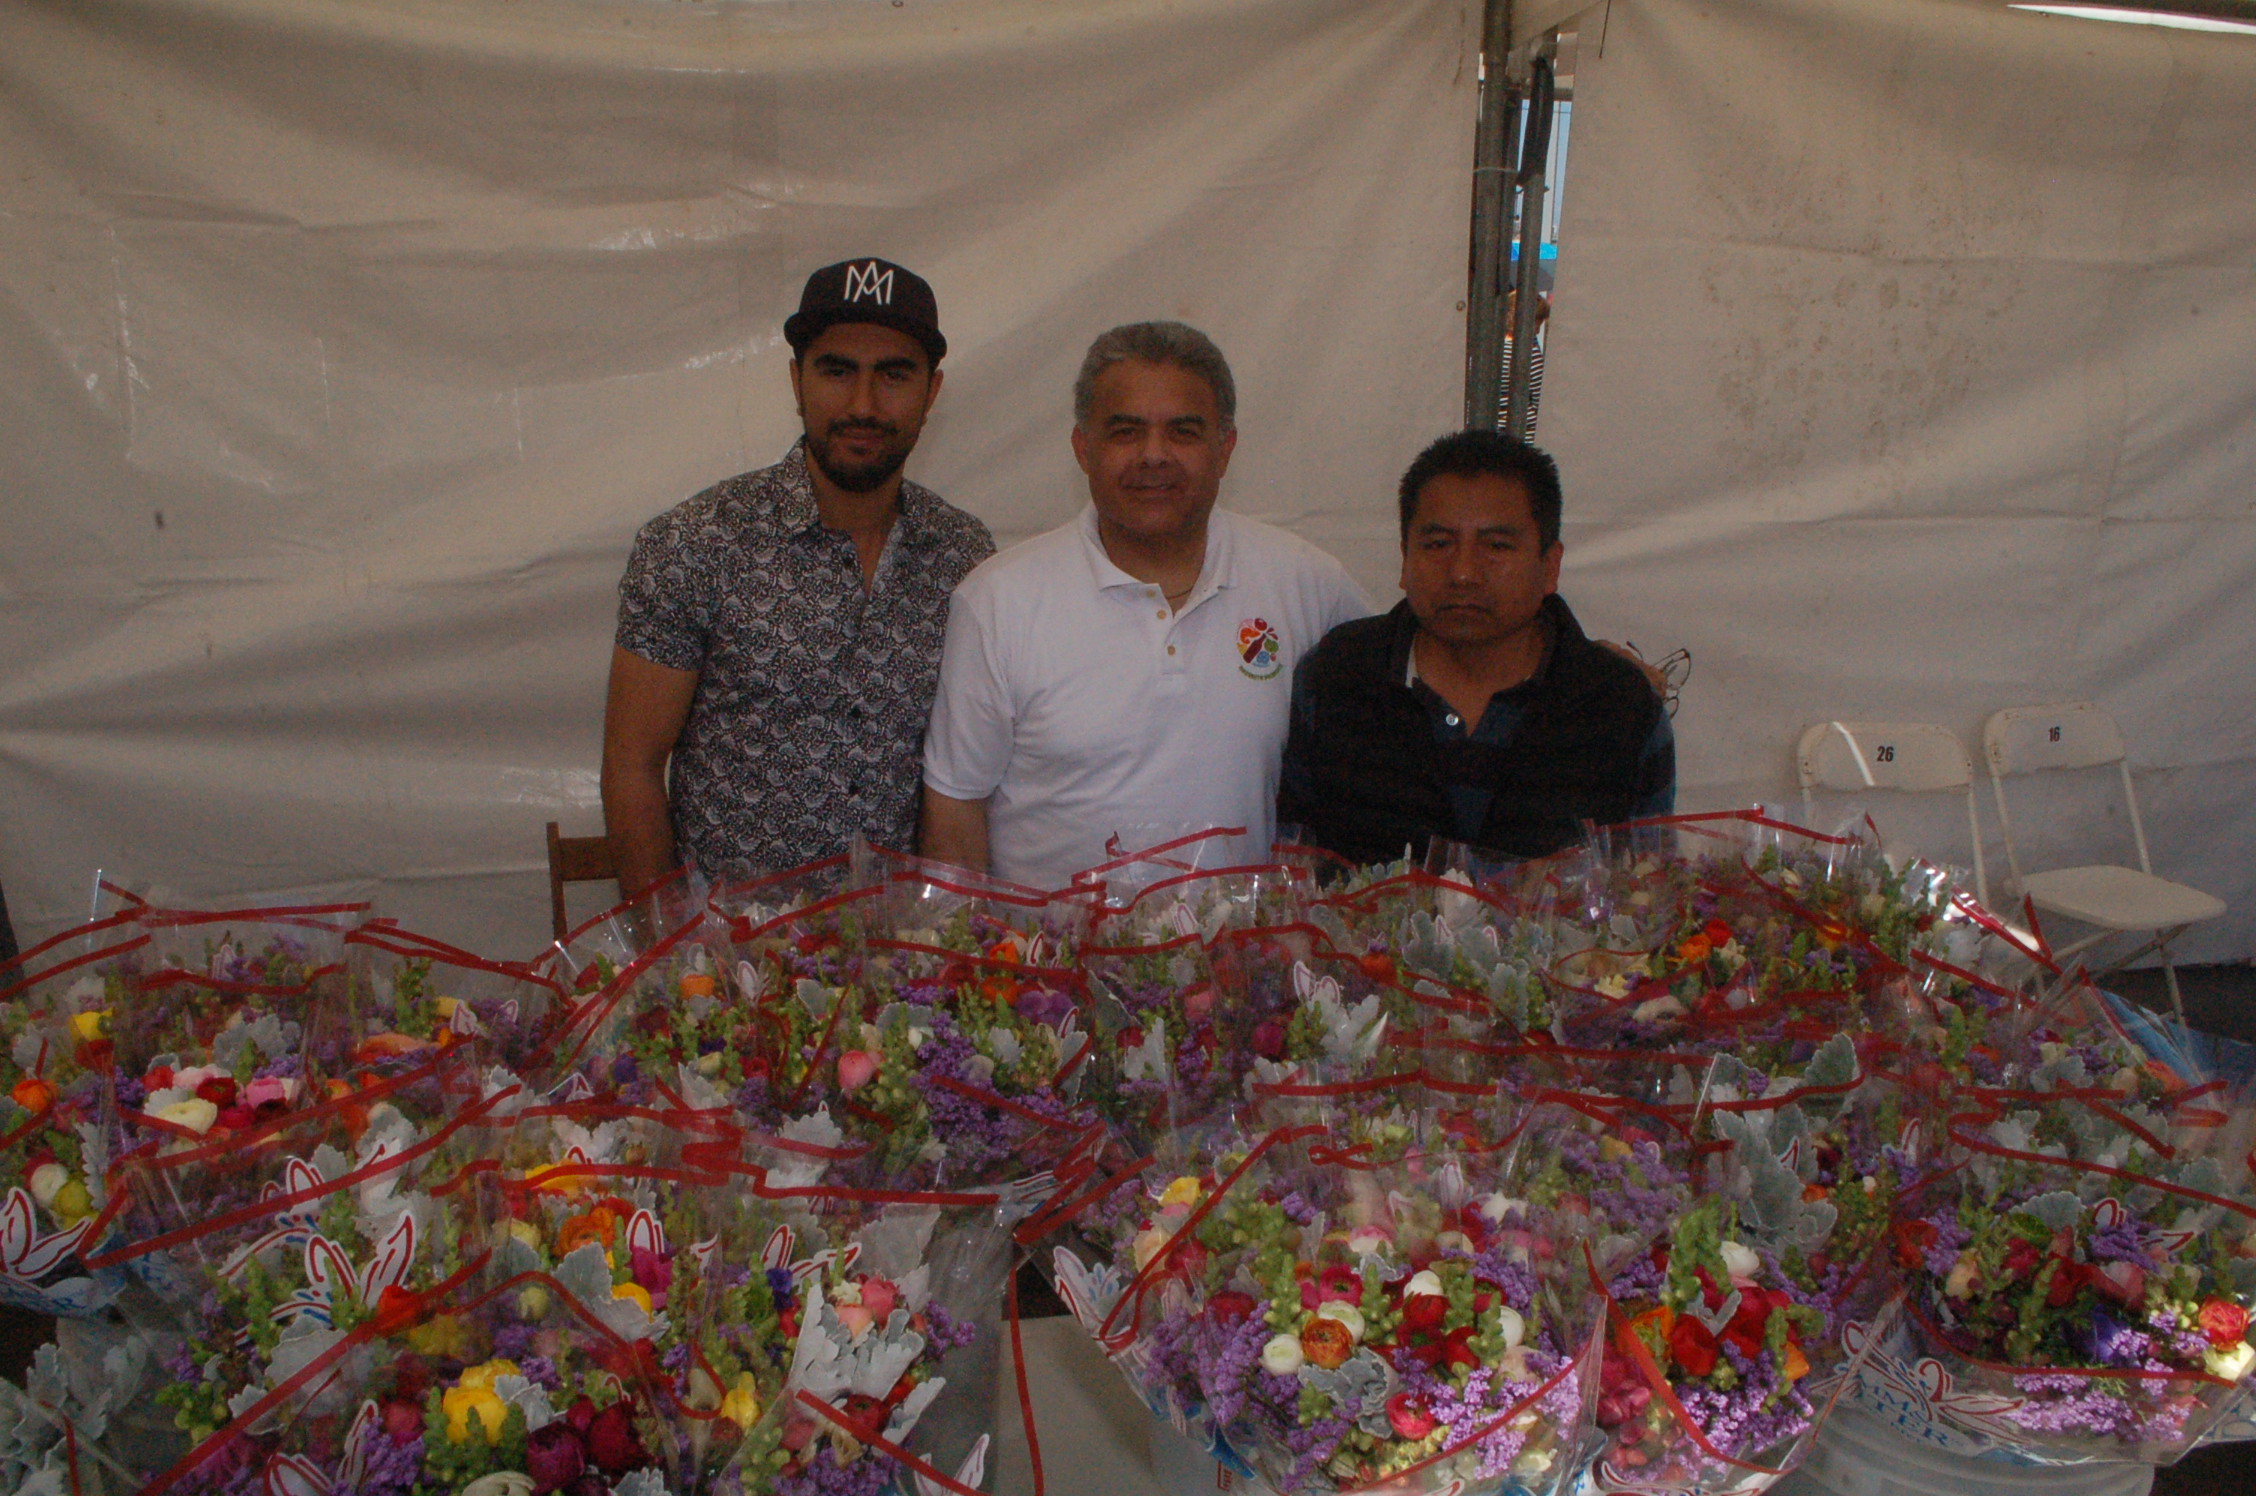 Primer Mercado de Productores Locales  “Rosarito Produce”